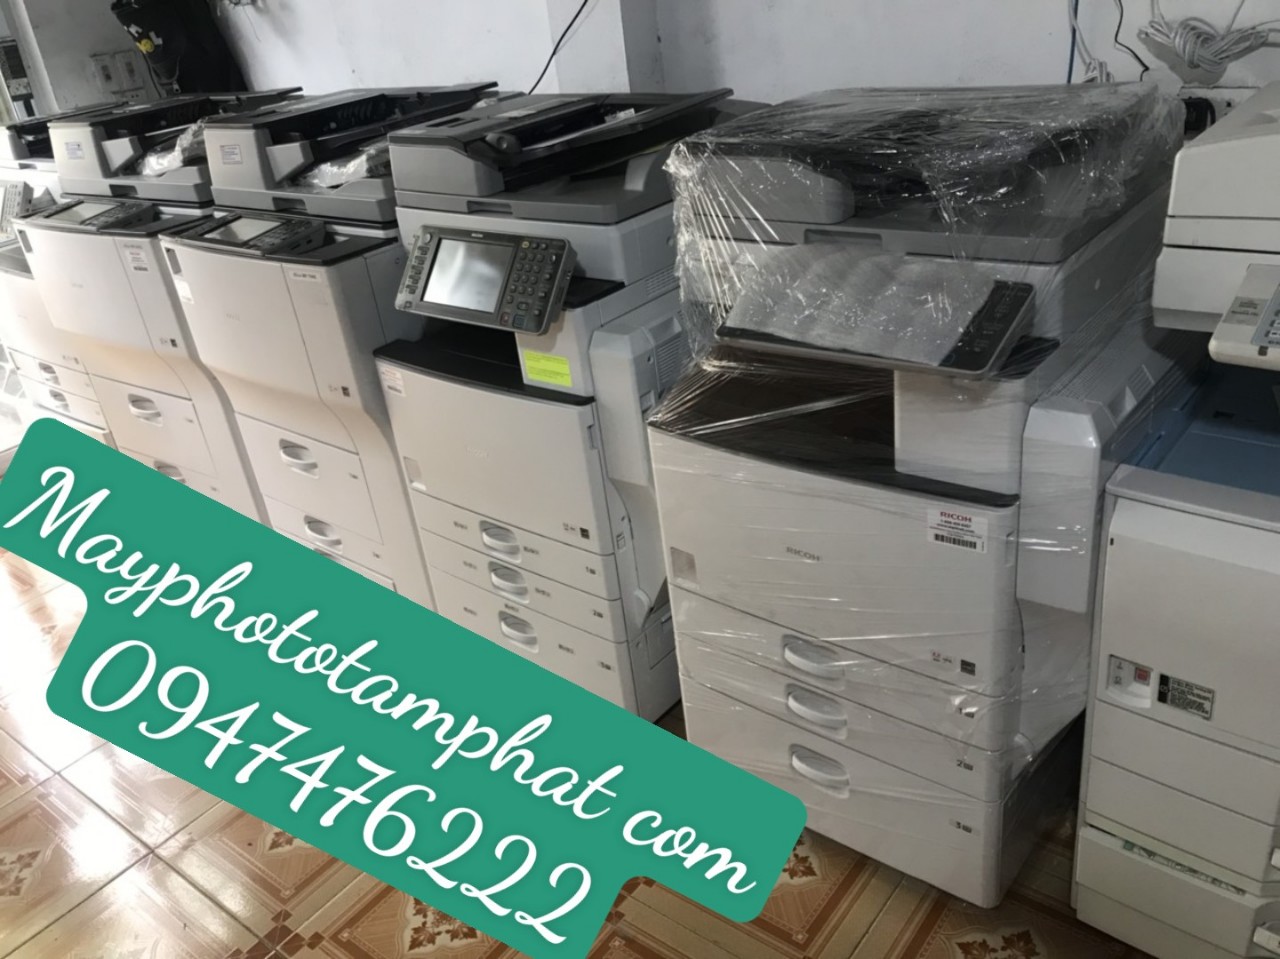 Địa chỉ cho thuê máy photocopy tại hà nội - 435 Thanh Bình